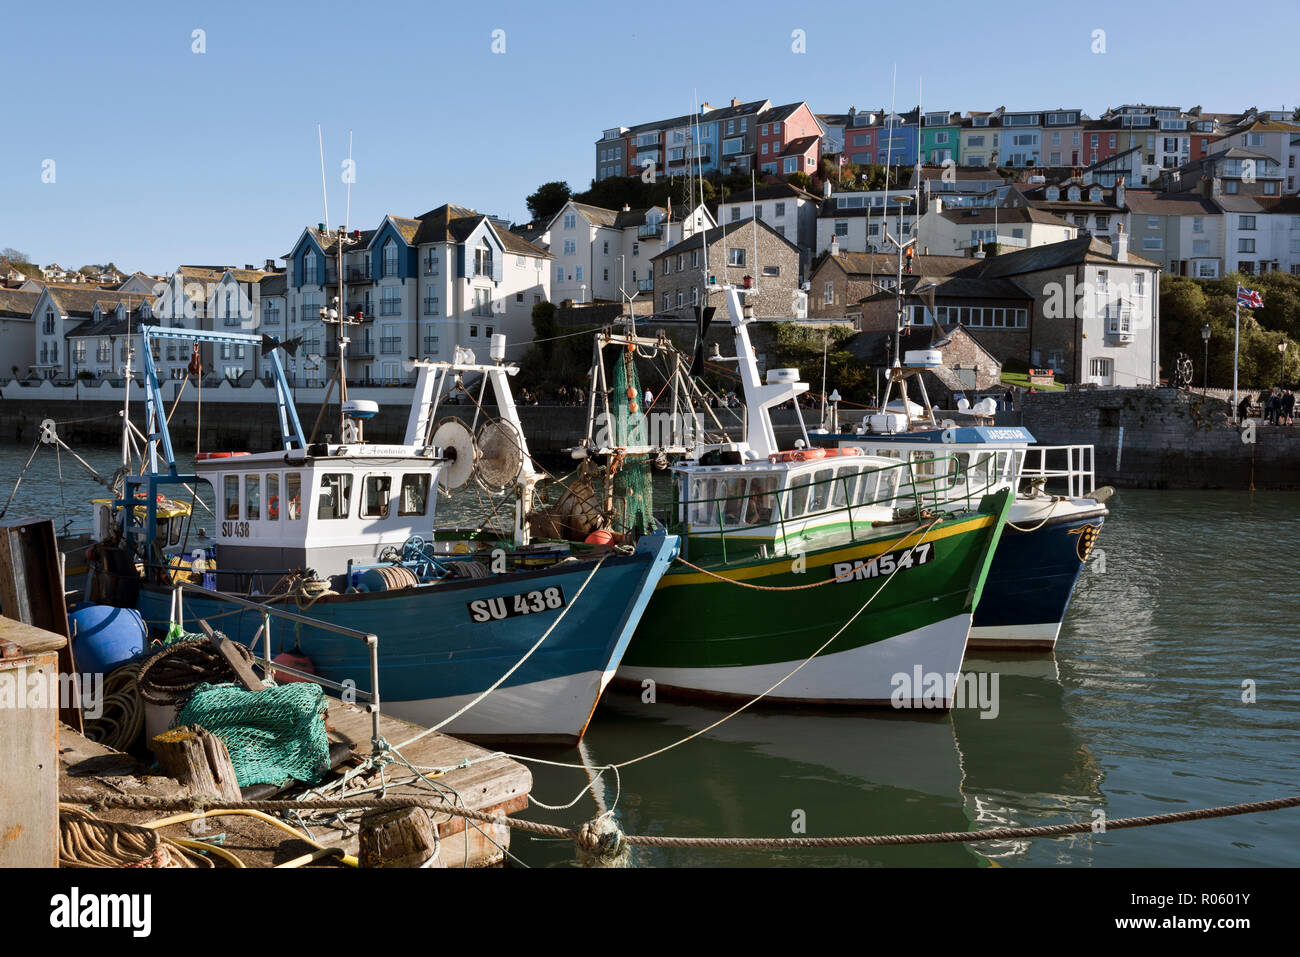 Les bateaux de pêche amarrés dans le port de Brixham, Devon, UK Banque D'Images